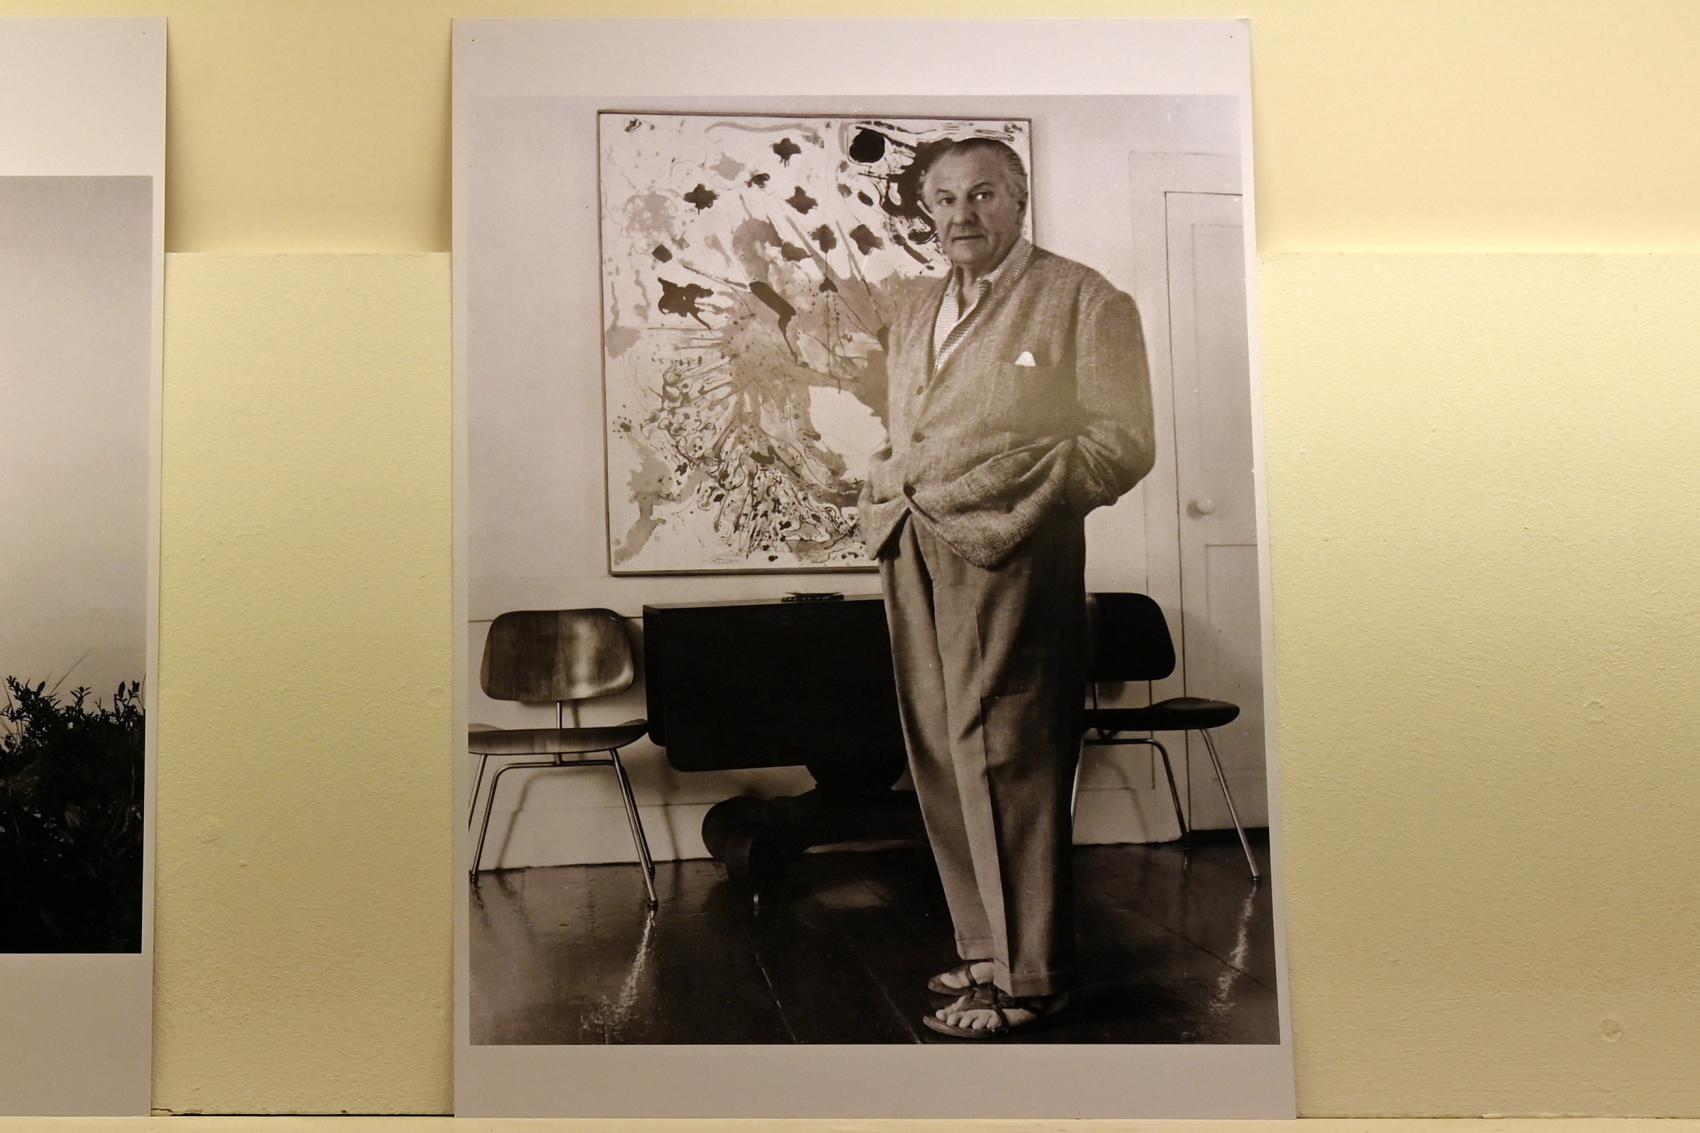 Im Atelier, Neumarkt in der Oberpfalz, Museum Lothar Fischer, Ausstellung "Hans Hofmann. Chimbote 1950 - Farben für die neue Stadt" vom 23.10.2022-29.01.2023, Undatiert